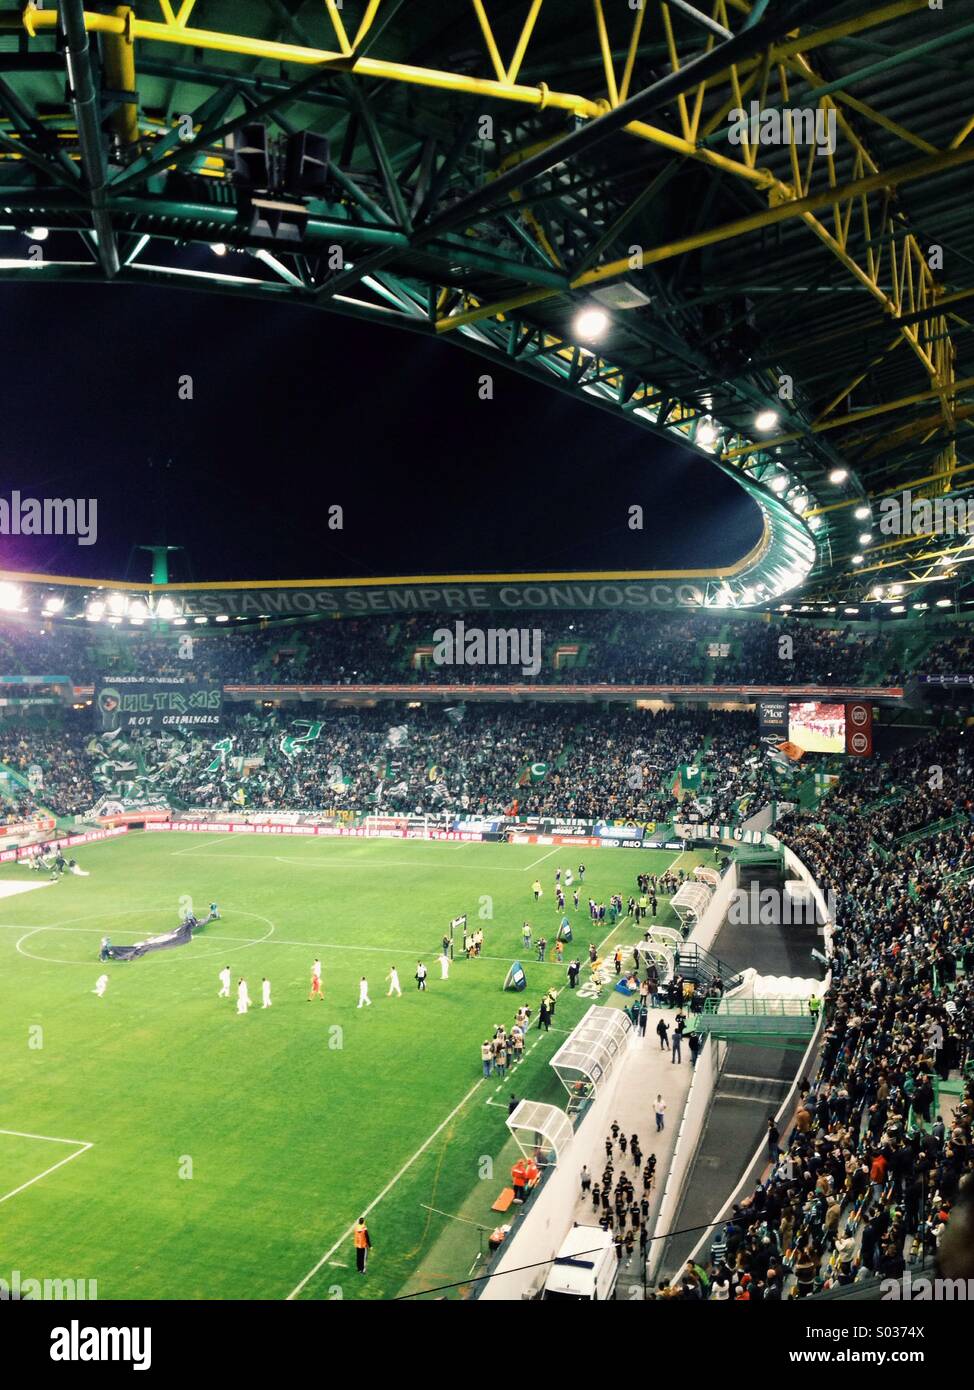 Le Sporting Clube de Portugal, stade José Alvalade XXI, pendant un match pour le championnat de football portugais, événement sportif, à Lisbonne, Portugal Banque D'Images